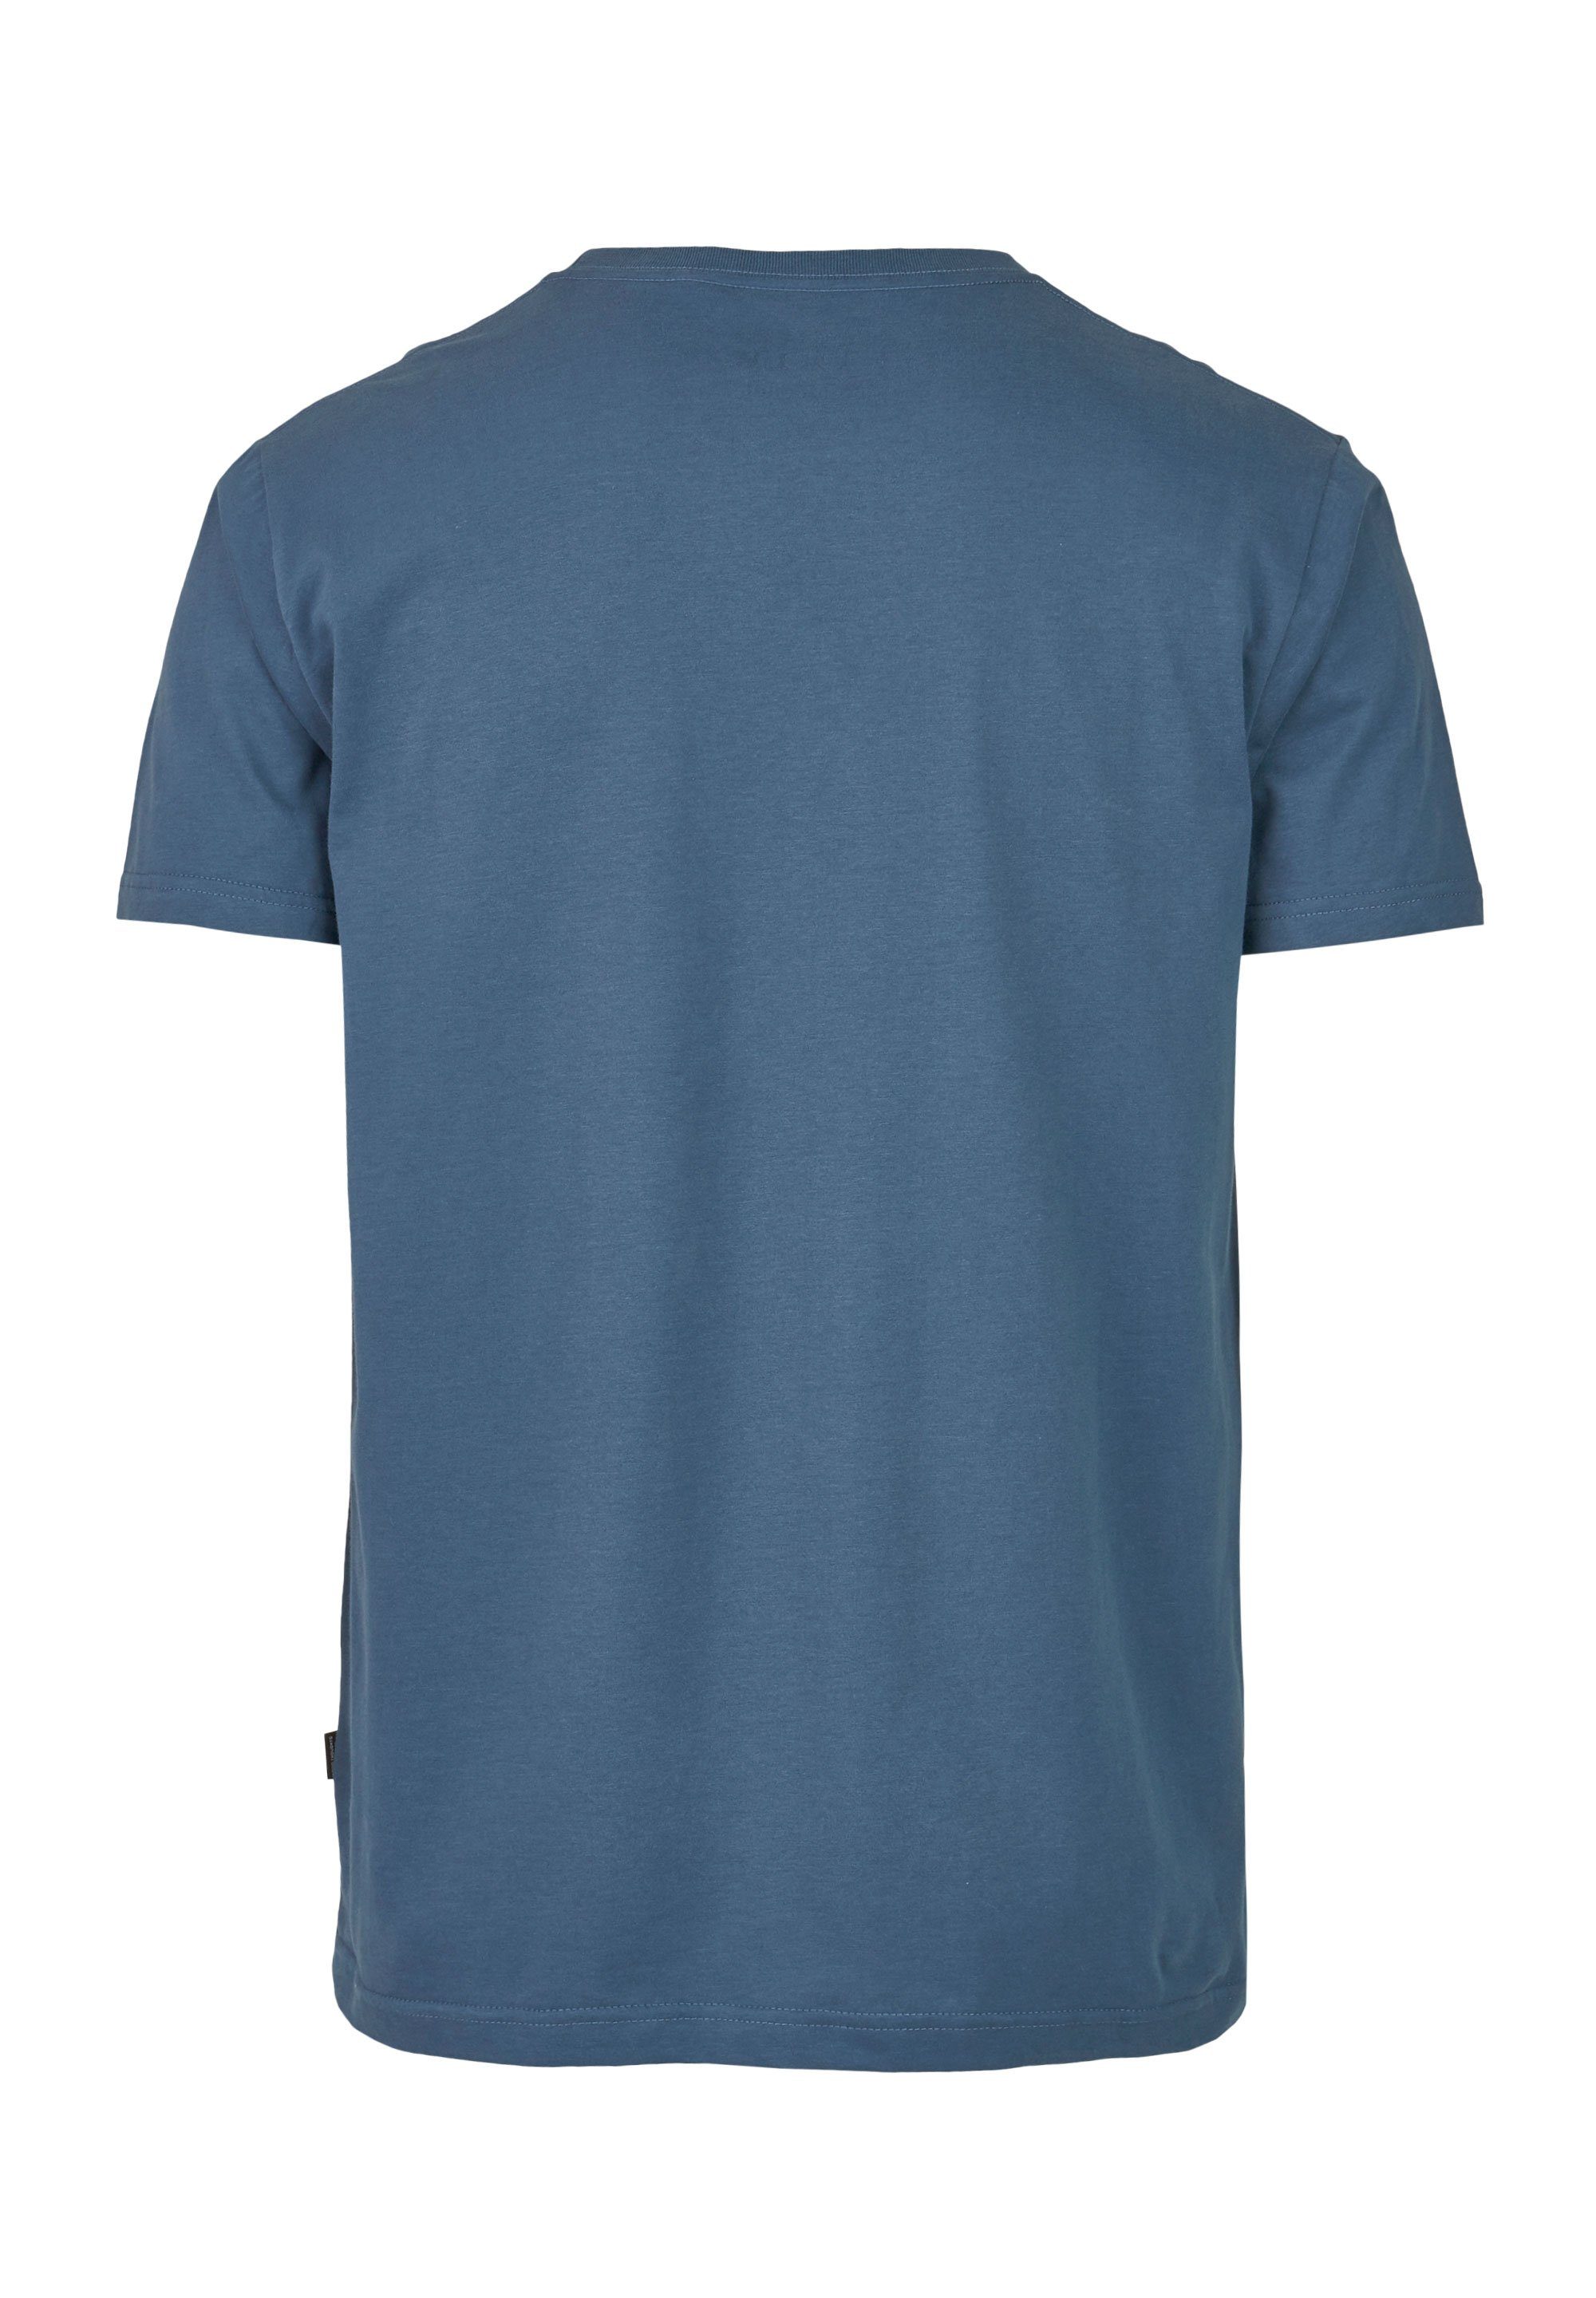 Cleptomanicx T-Shirt Ligull blau-blau mit (1-tlg) kleiner Logo-Stickerei Regular